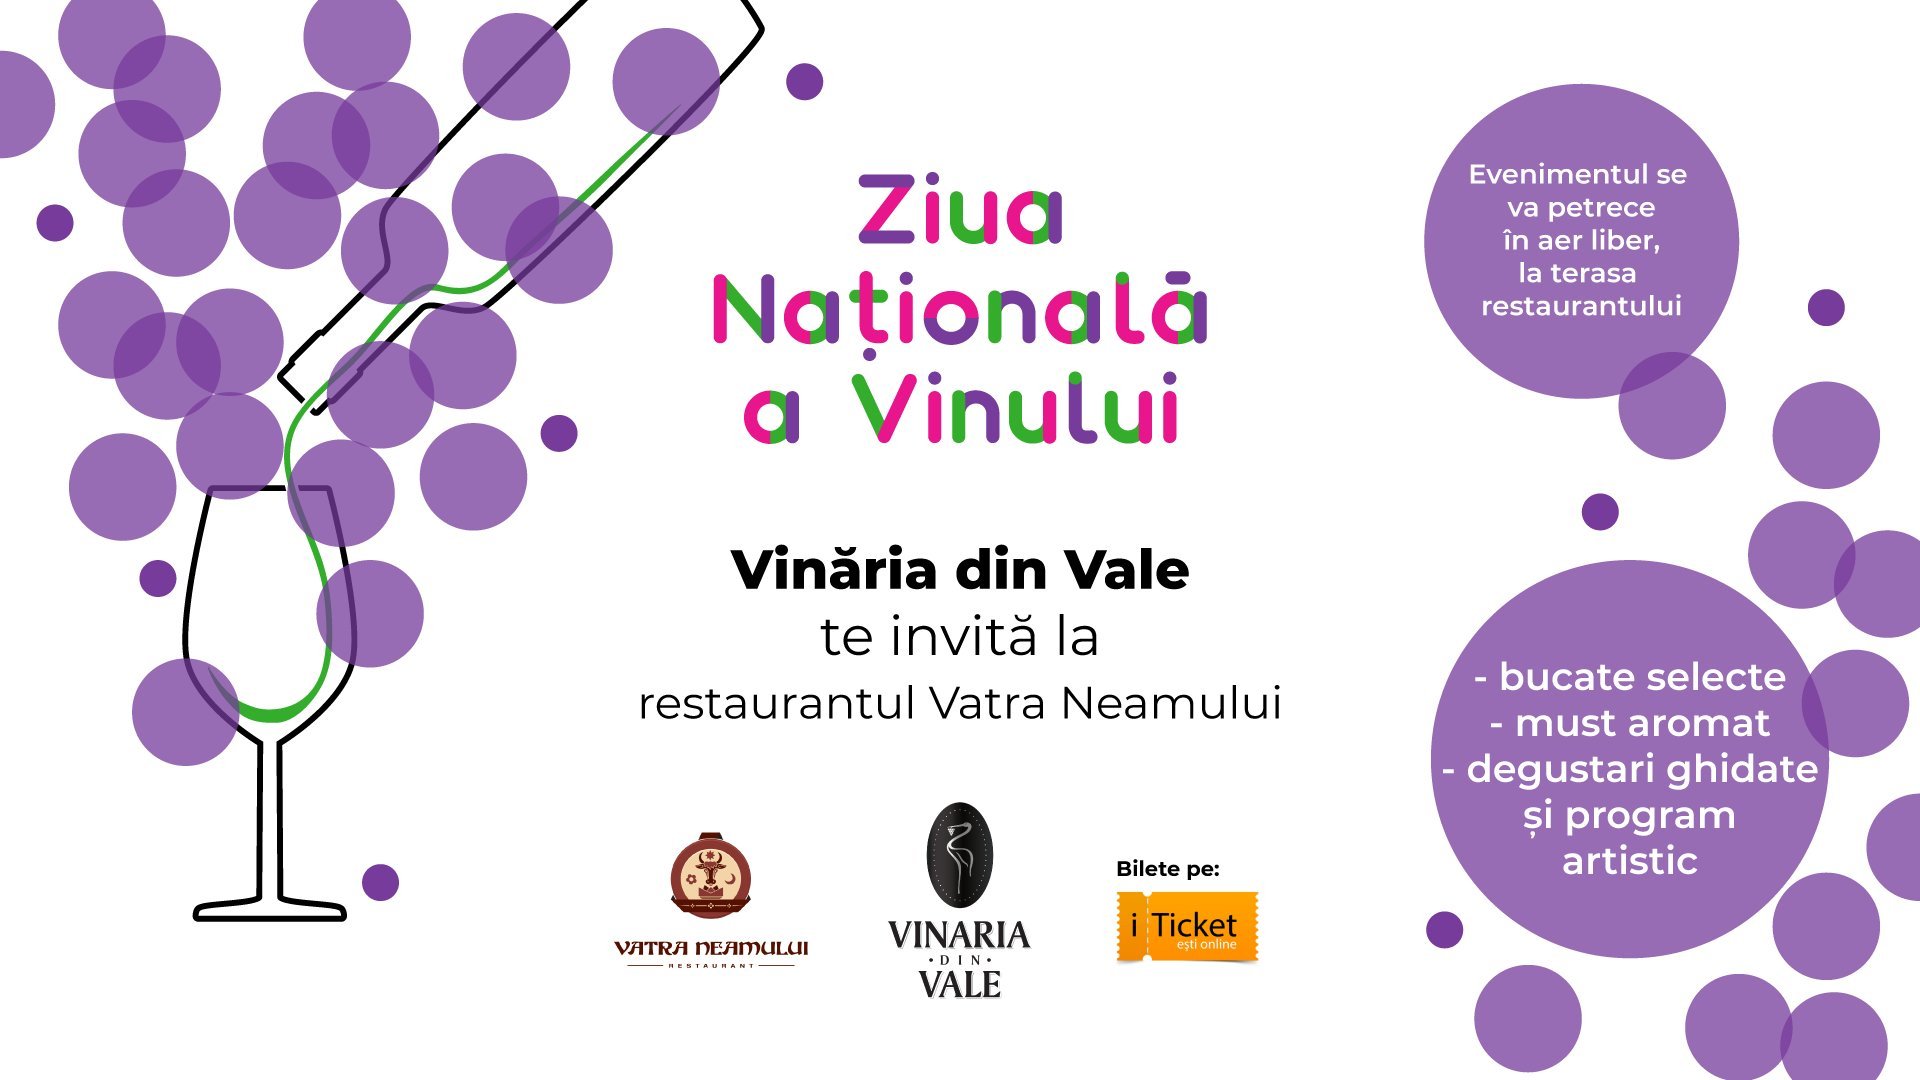 Vinăria din Vale te invită la Ziua Națională a Vinului, la restaurantul Vatra Neamului